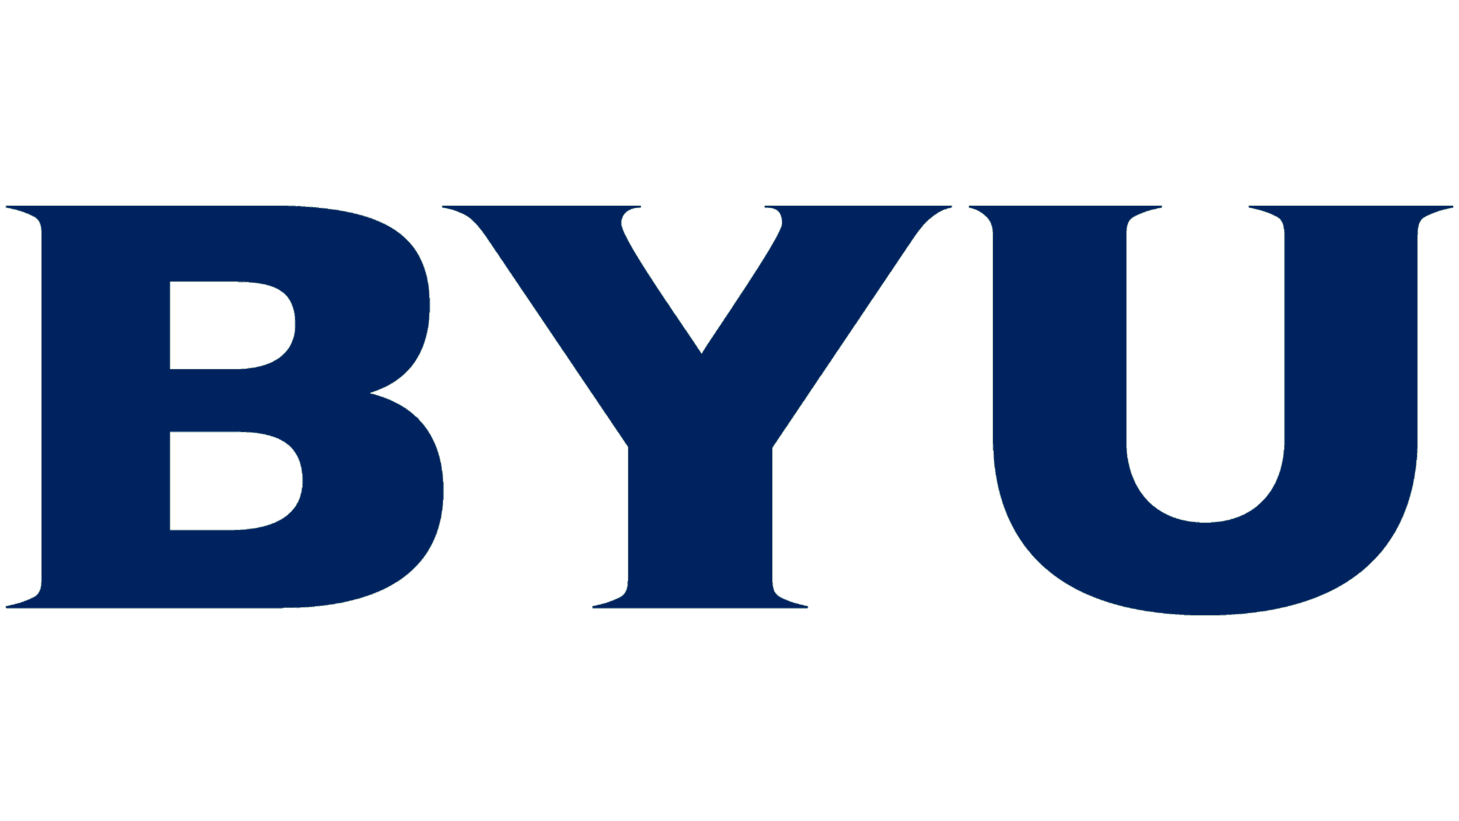 Byu symbol